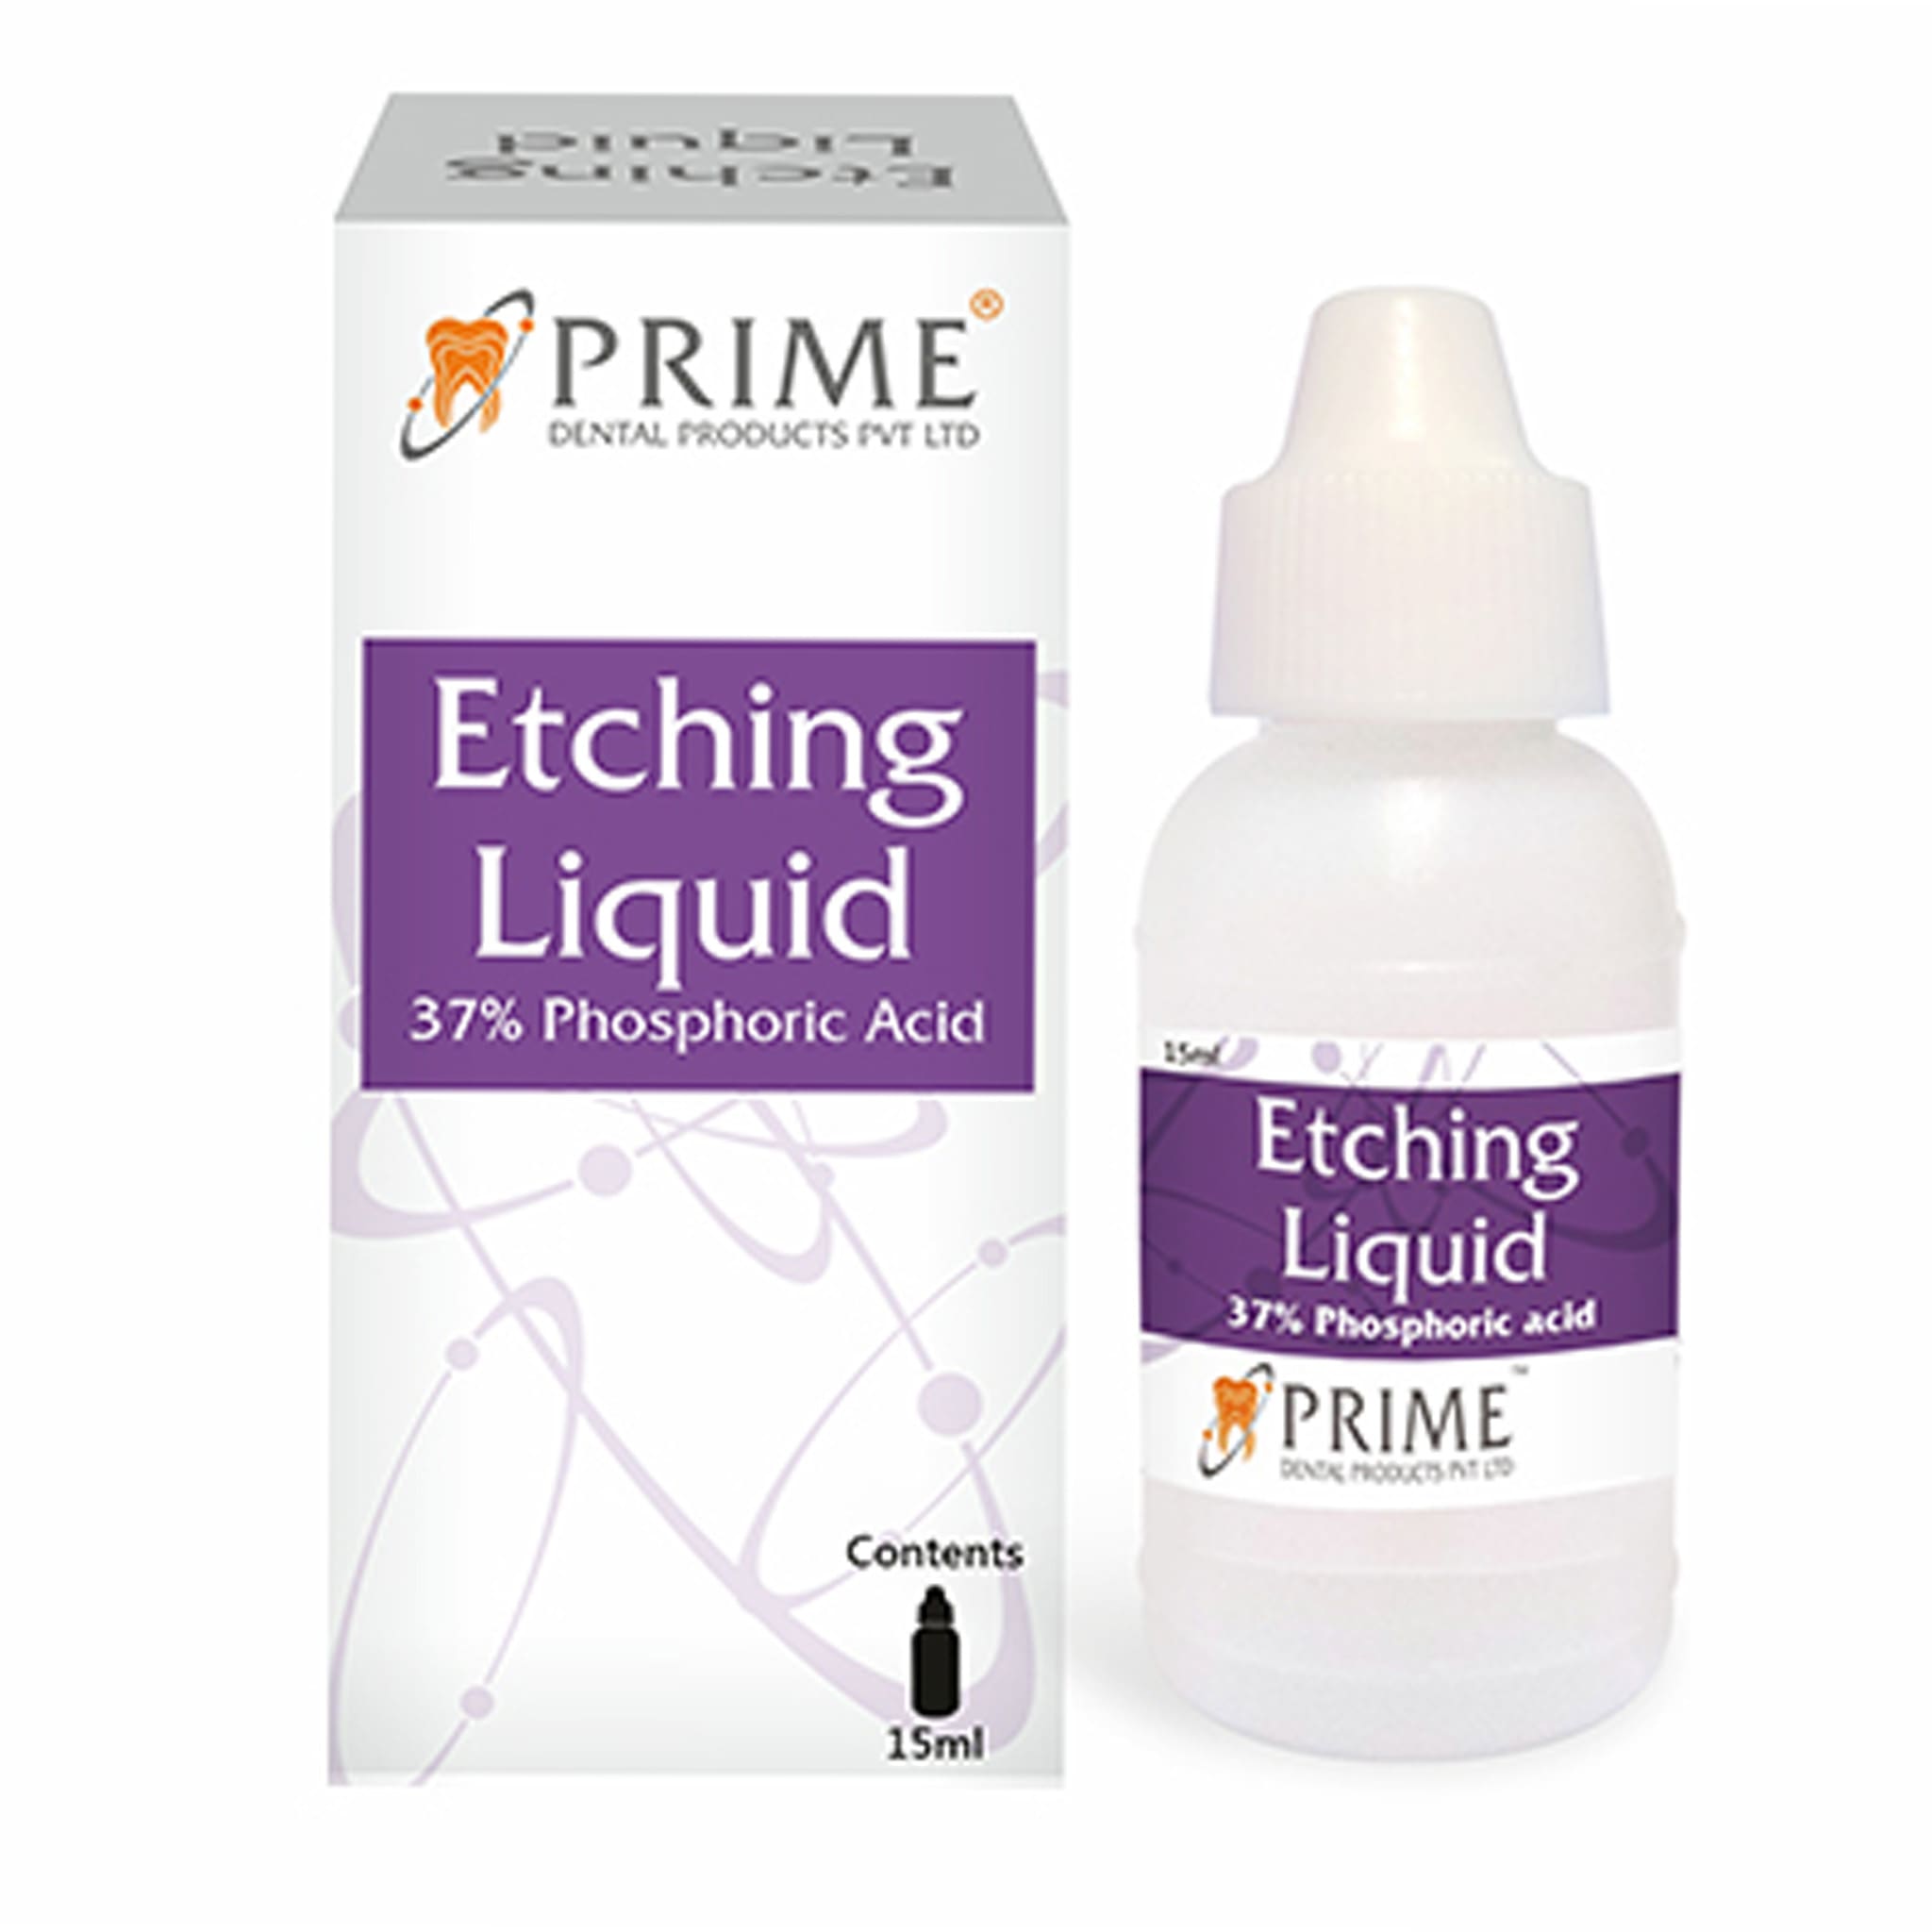 Prime Etching Liquid